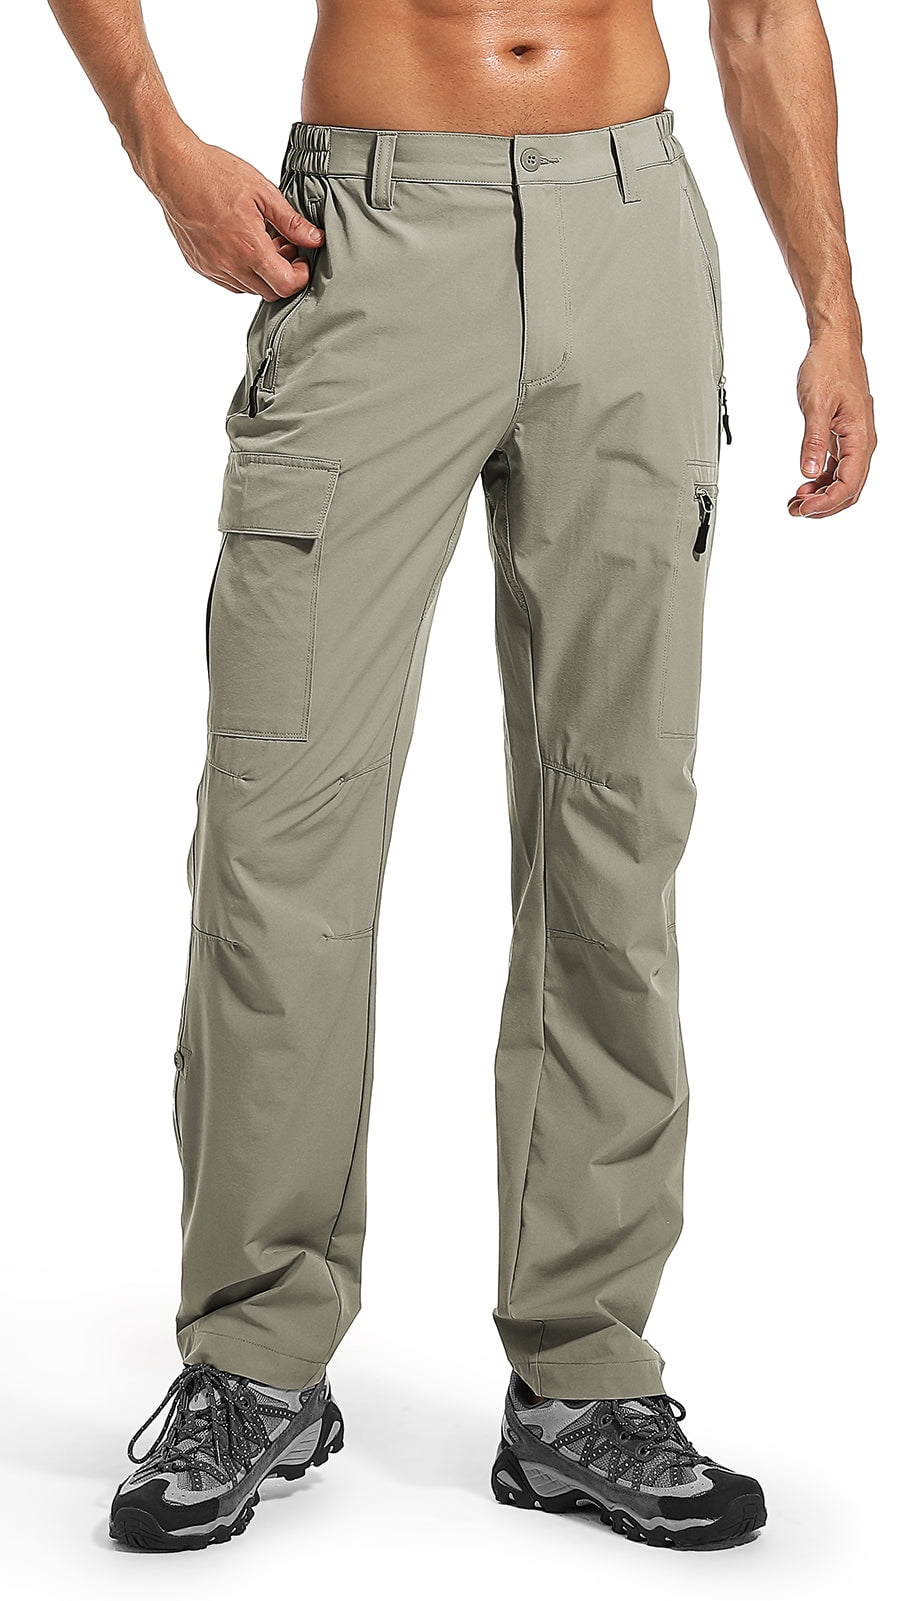 Moosehill Men's Hiking Cargo Pants Lightweight Quick Dry Waterproof ...